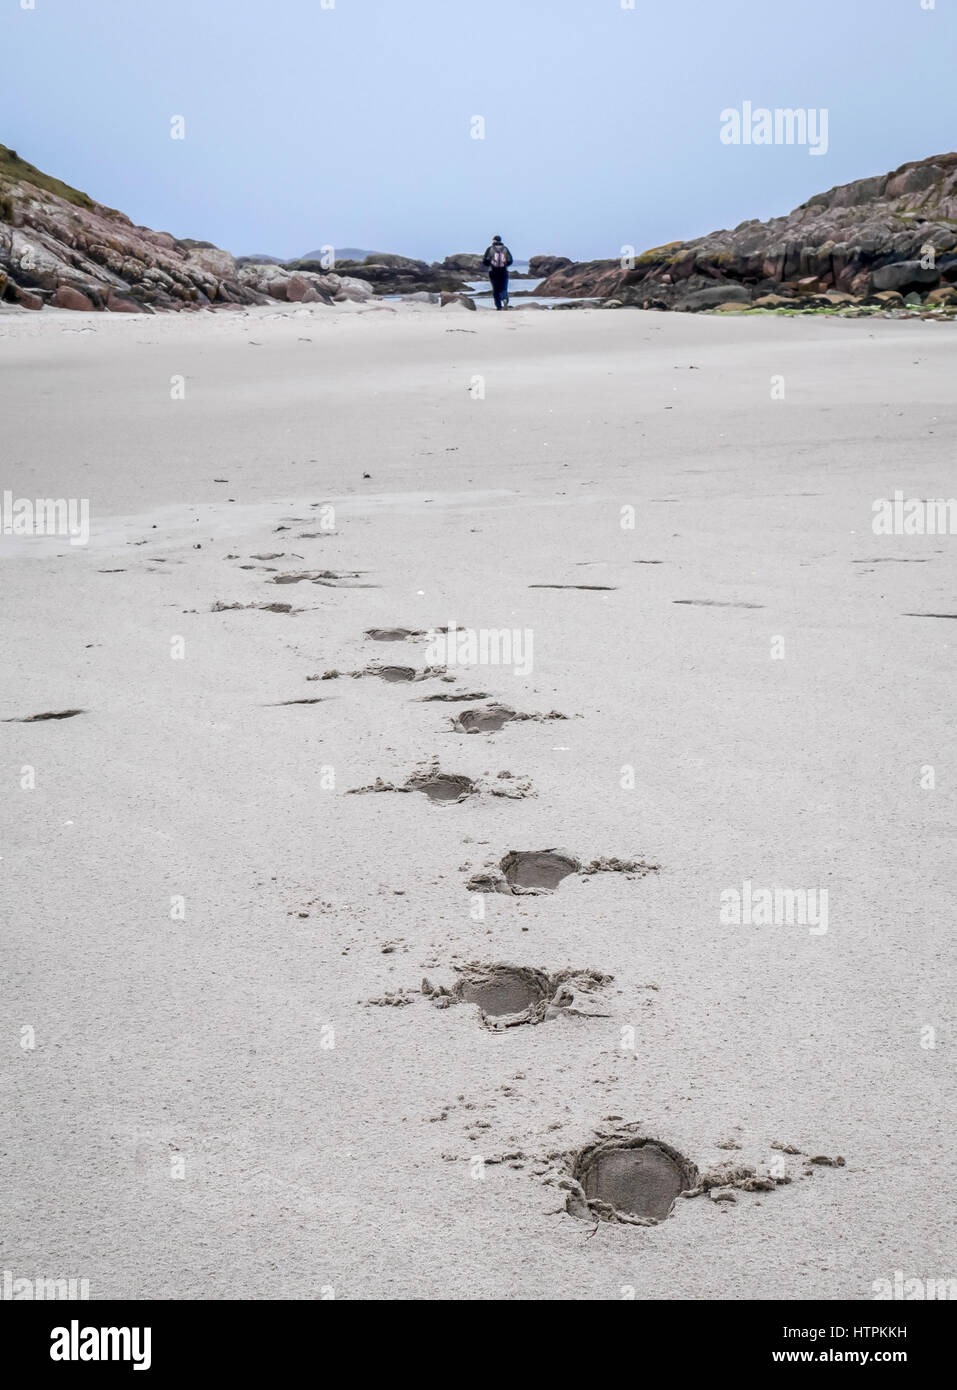 Huellas en la arena blanca que conduce a distancia con hombre solitario caminando, Isle Of Mull, Escocia, Reino Unido Foto de stock